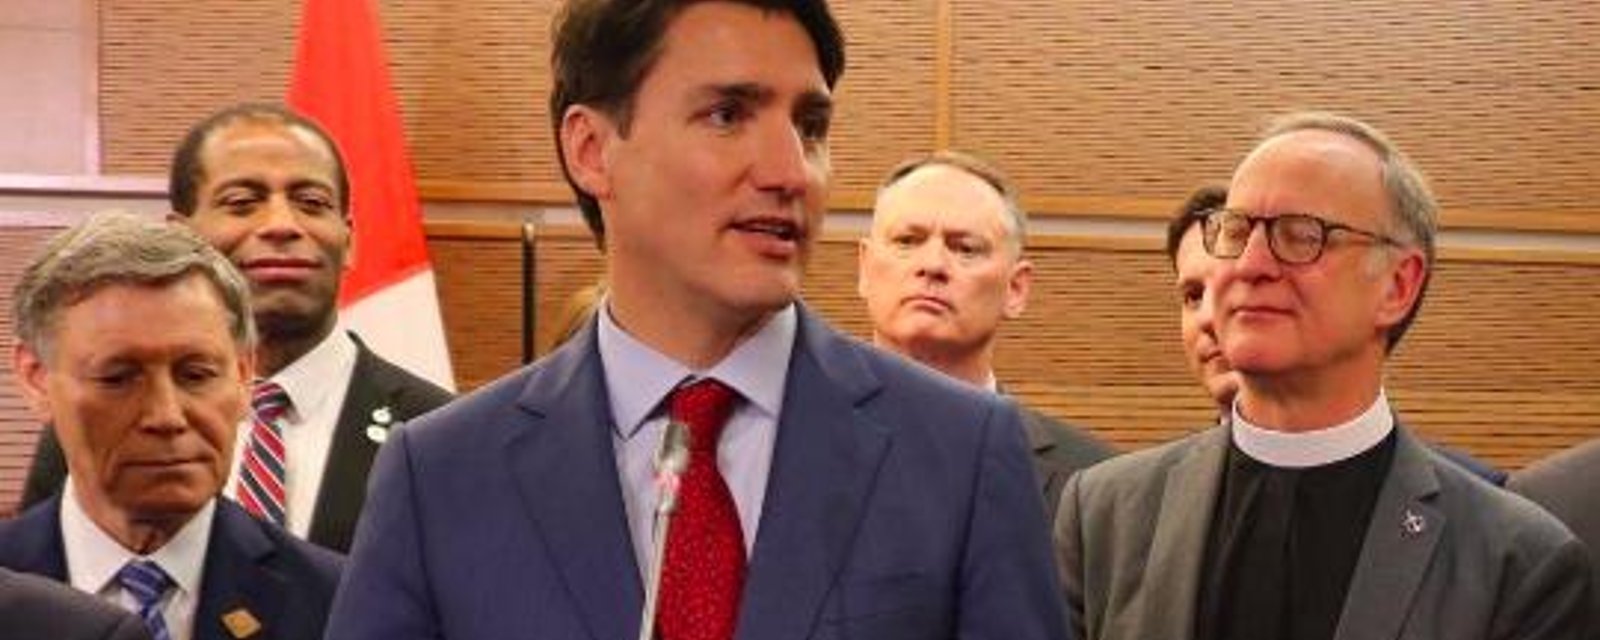 Justin Trudeau affirme qu'il faut «surveiller» les anti-immigrants